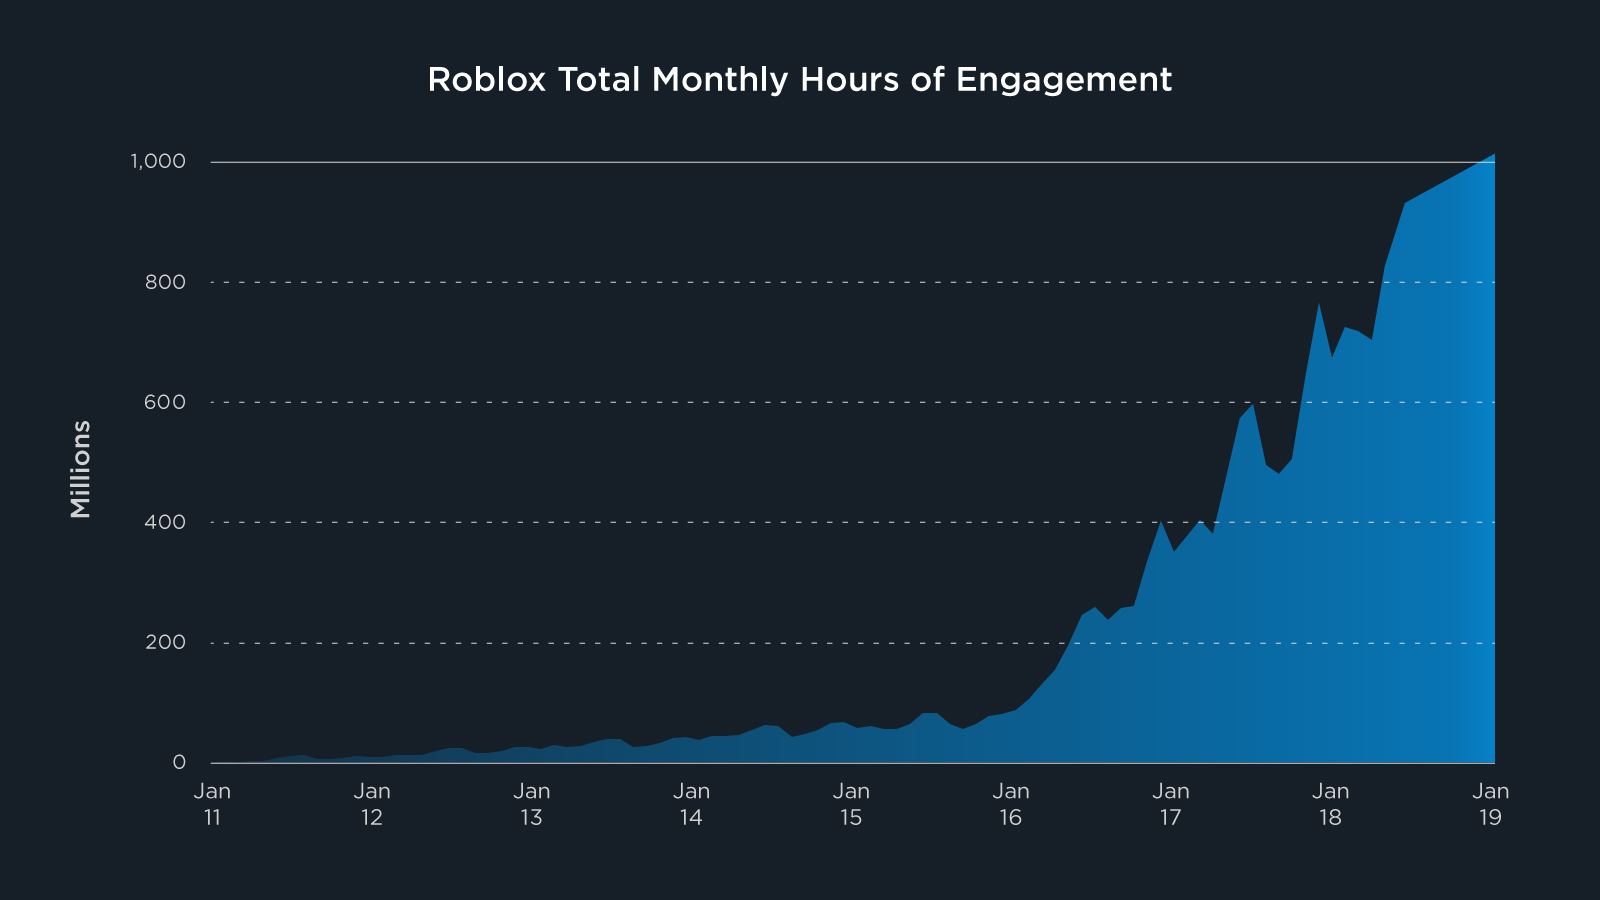 Roblox Announces A New Community Milestone In 2019 Roblox Blog